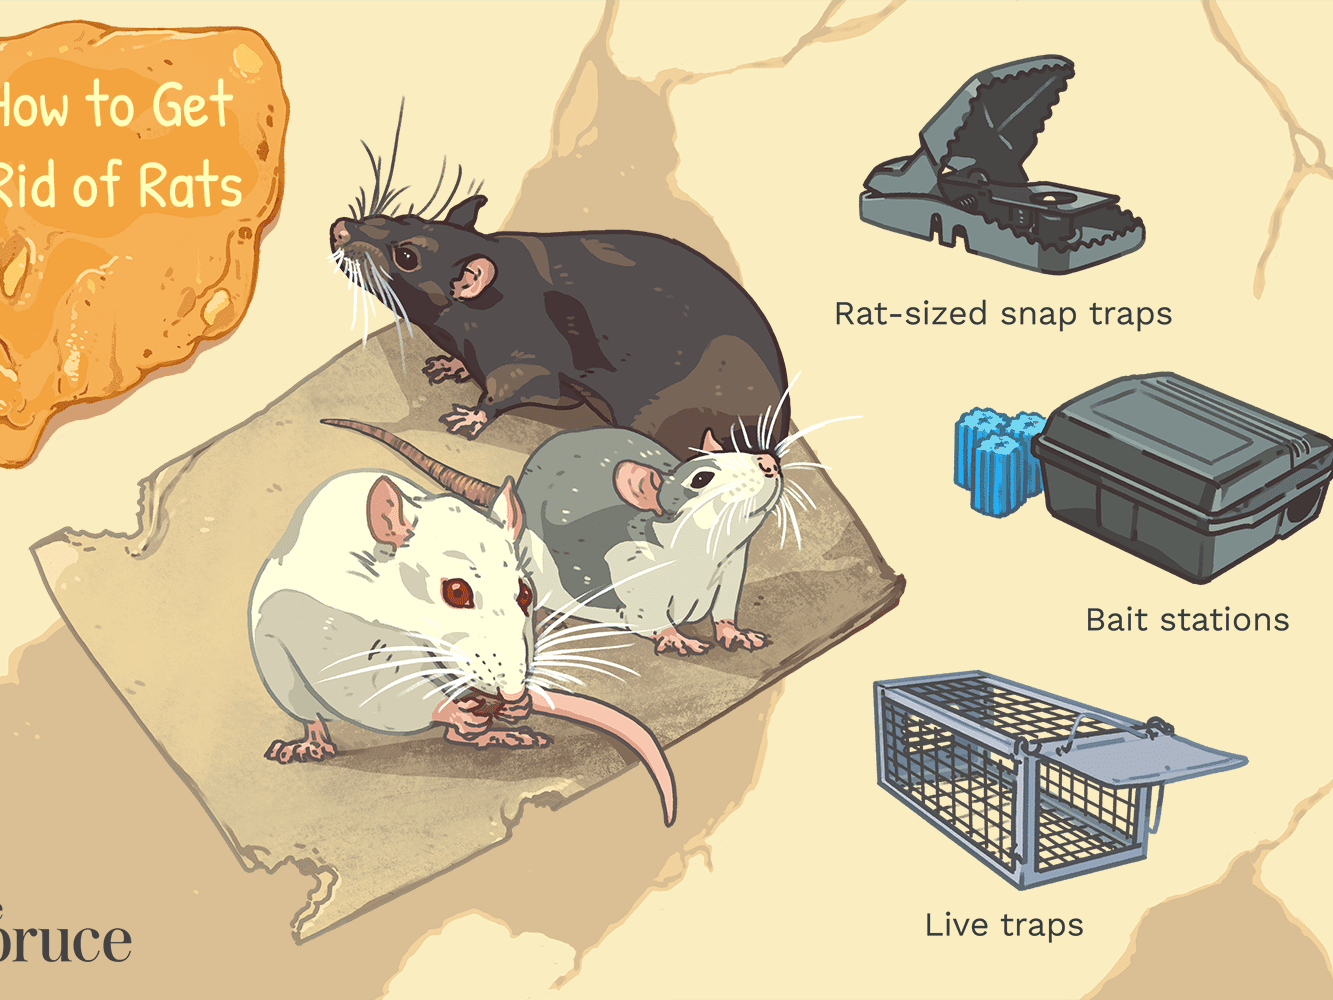 get rid of rats